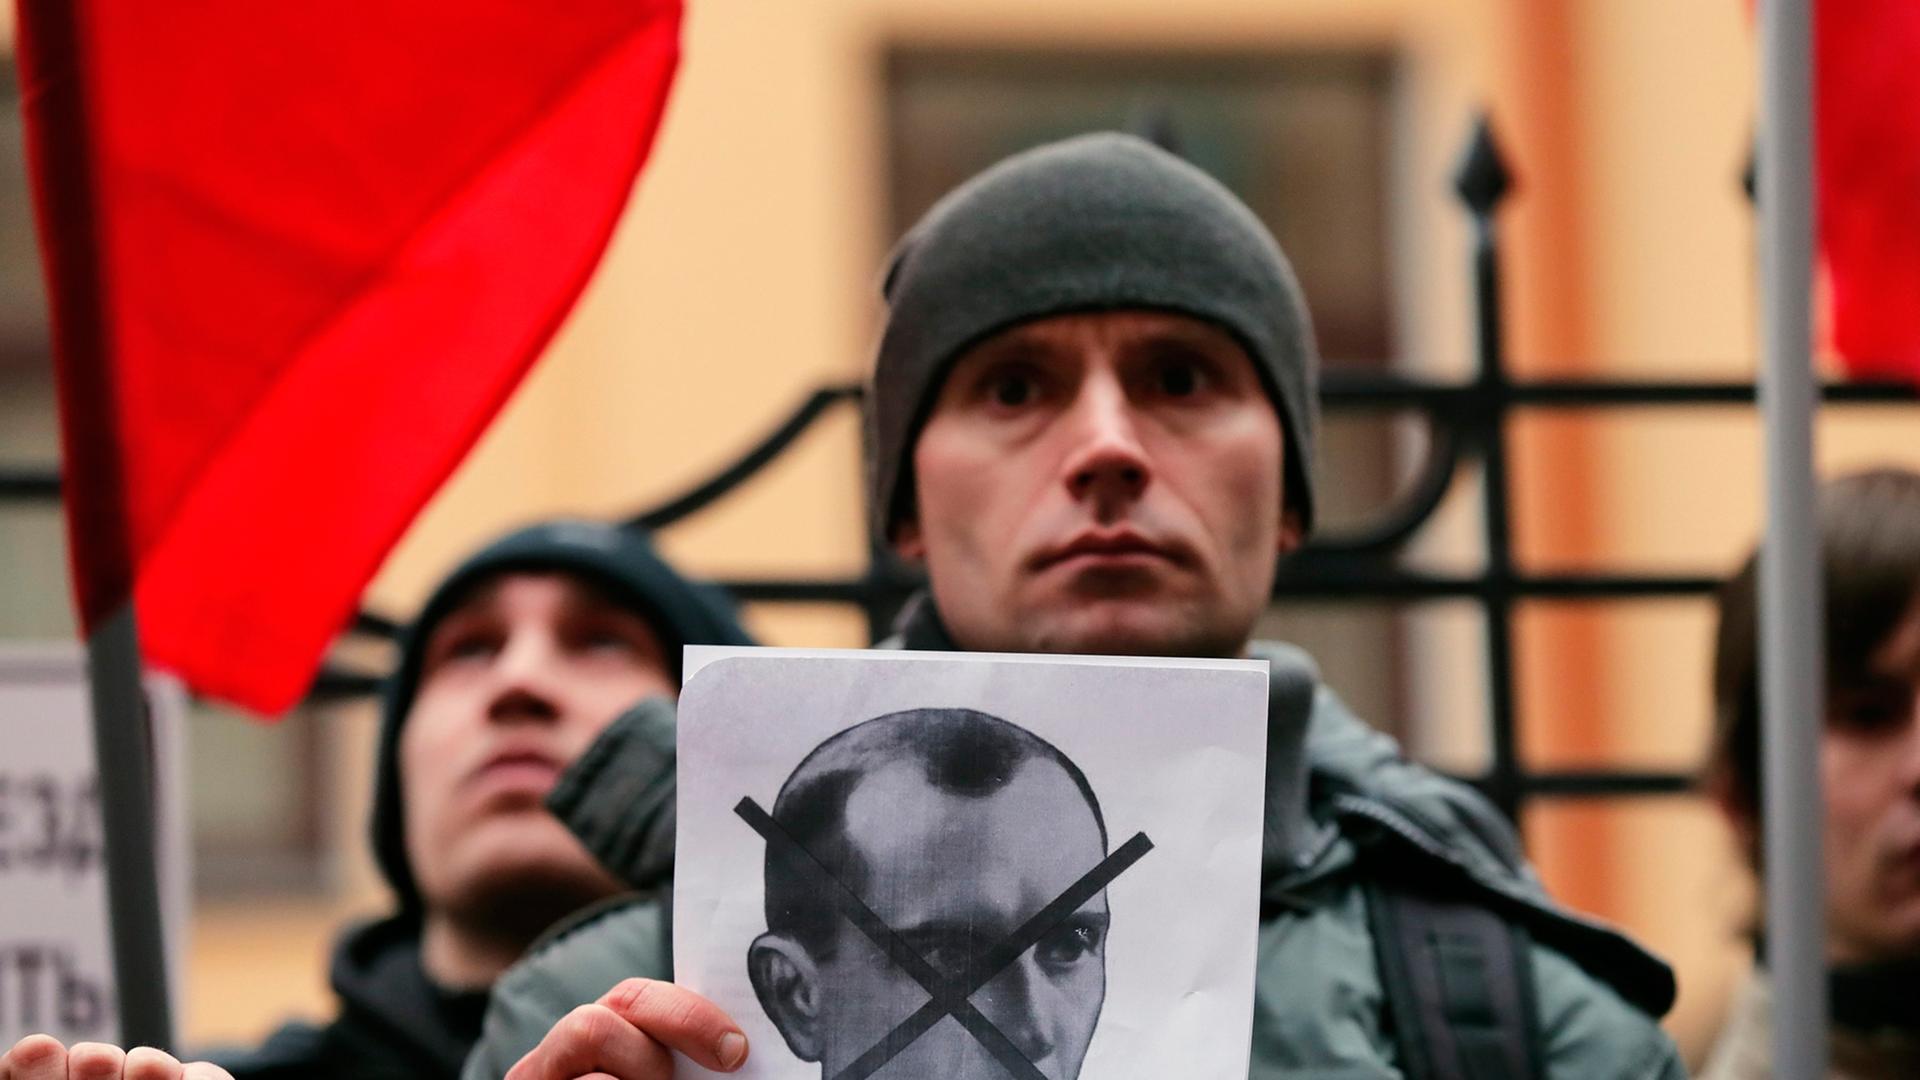 Ein Demonstrant hält ein Schwarz-weiß-Bild von Stepan Bandera in der Hand, dessen Gesicht darauf durchgestrichen ist, im Hintergrund weitere Demonstranten und rote Fahnen